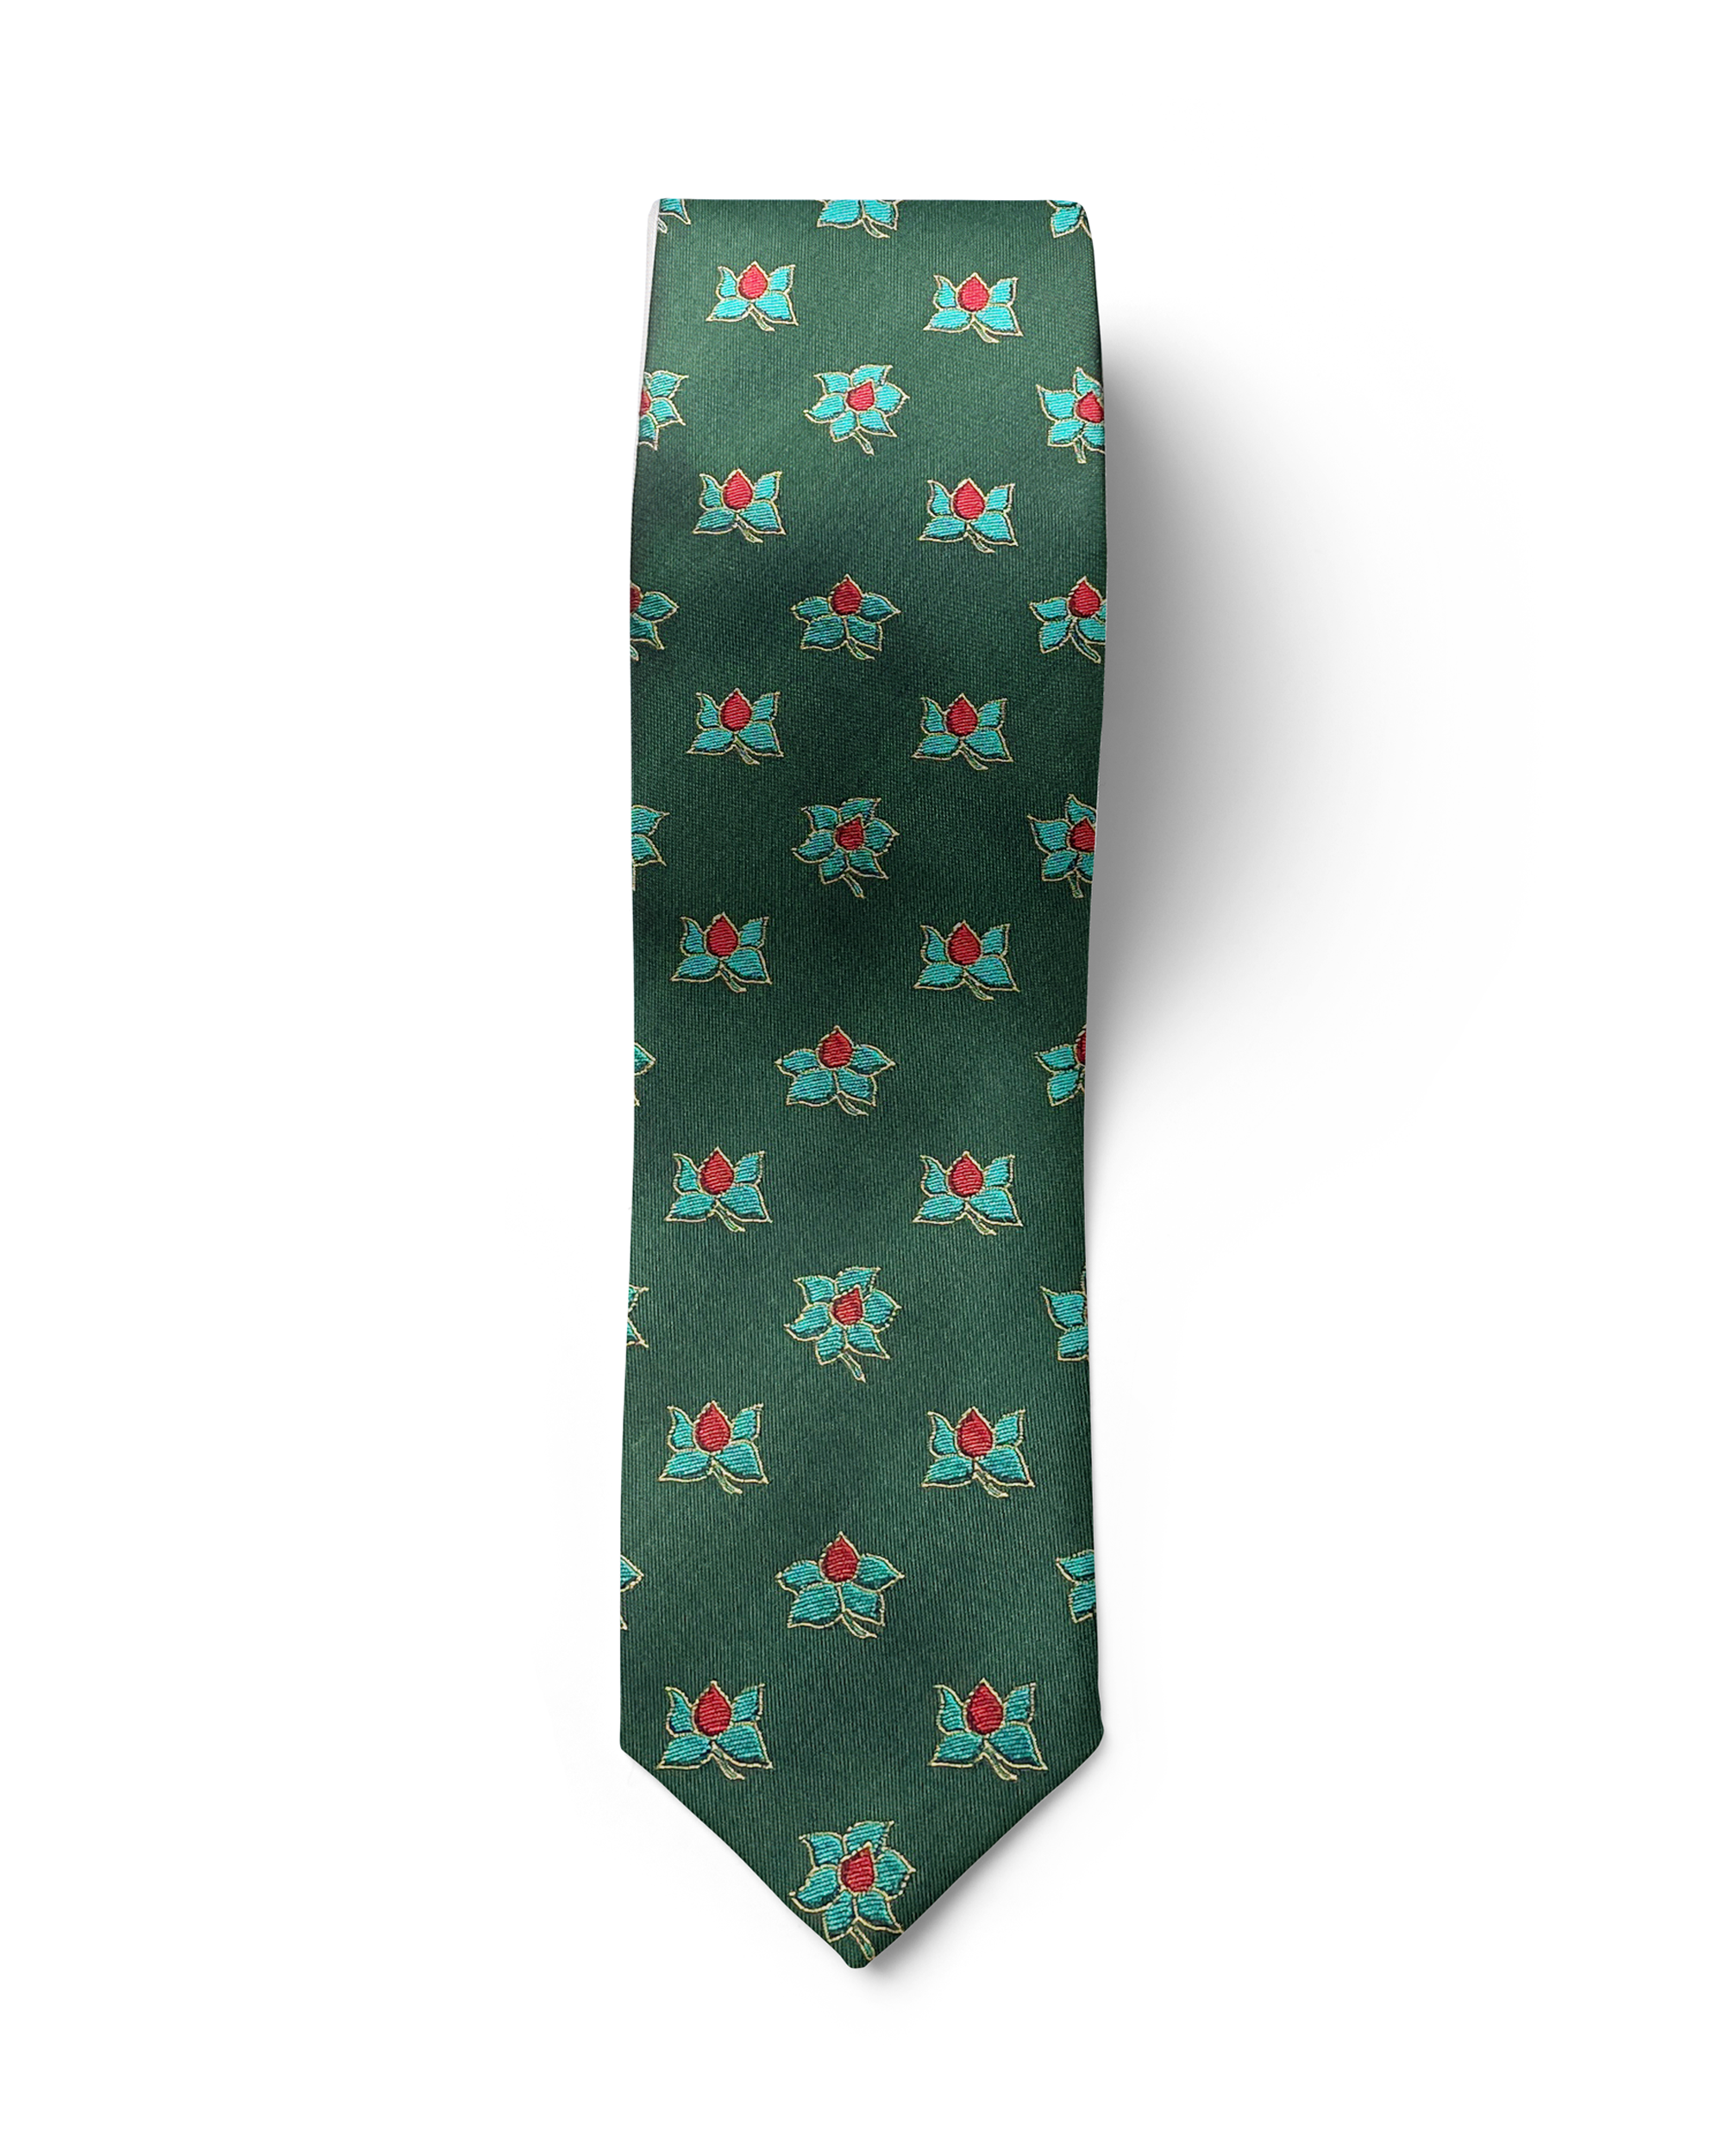 ჟაკარდის აბრეშუმის ჰალსტუხის და საგულის სეტი „ლეგა მაგნოლია“ (მწვანე)